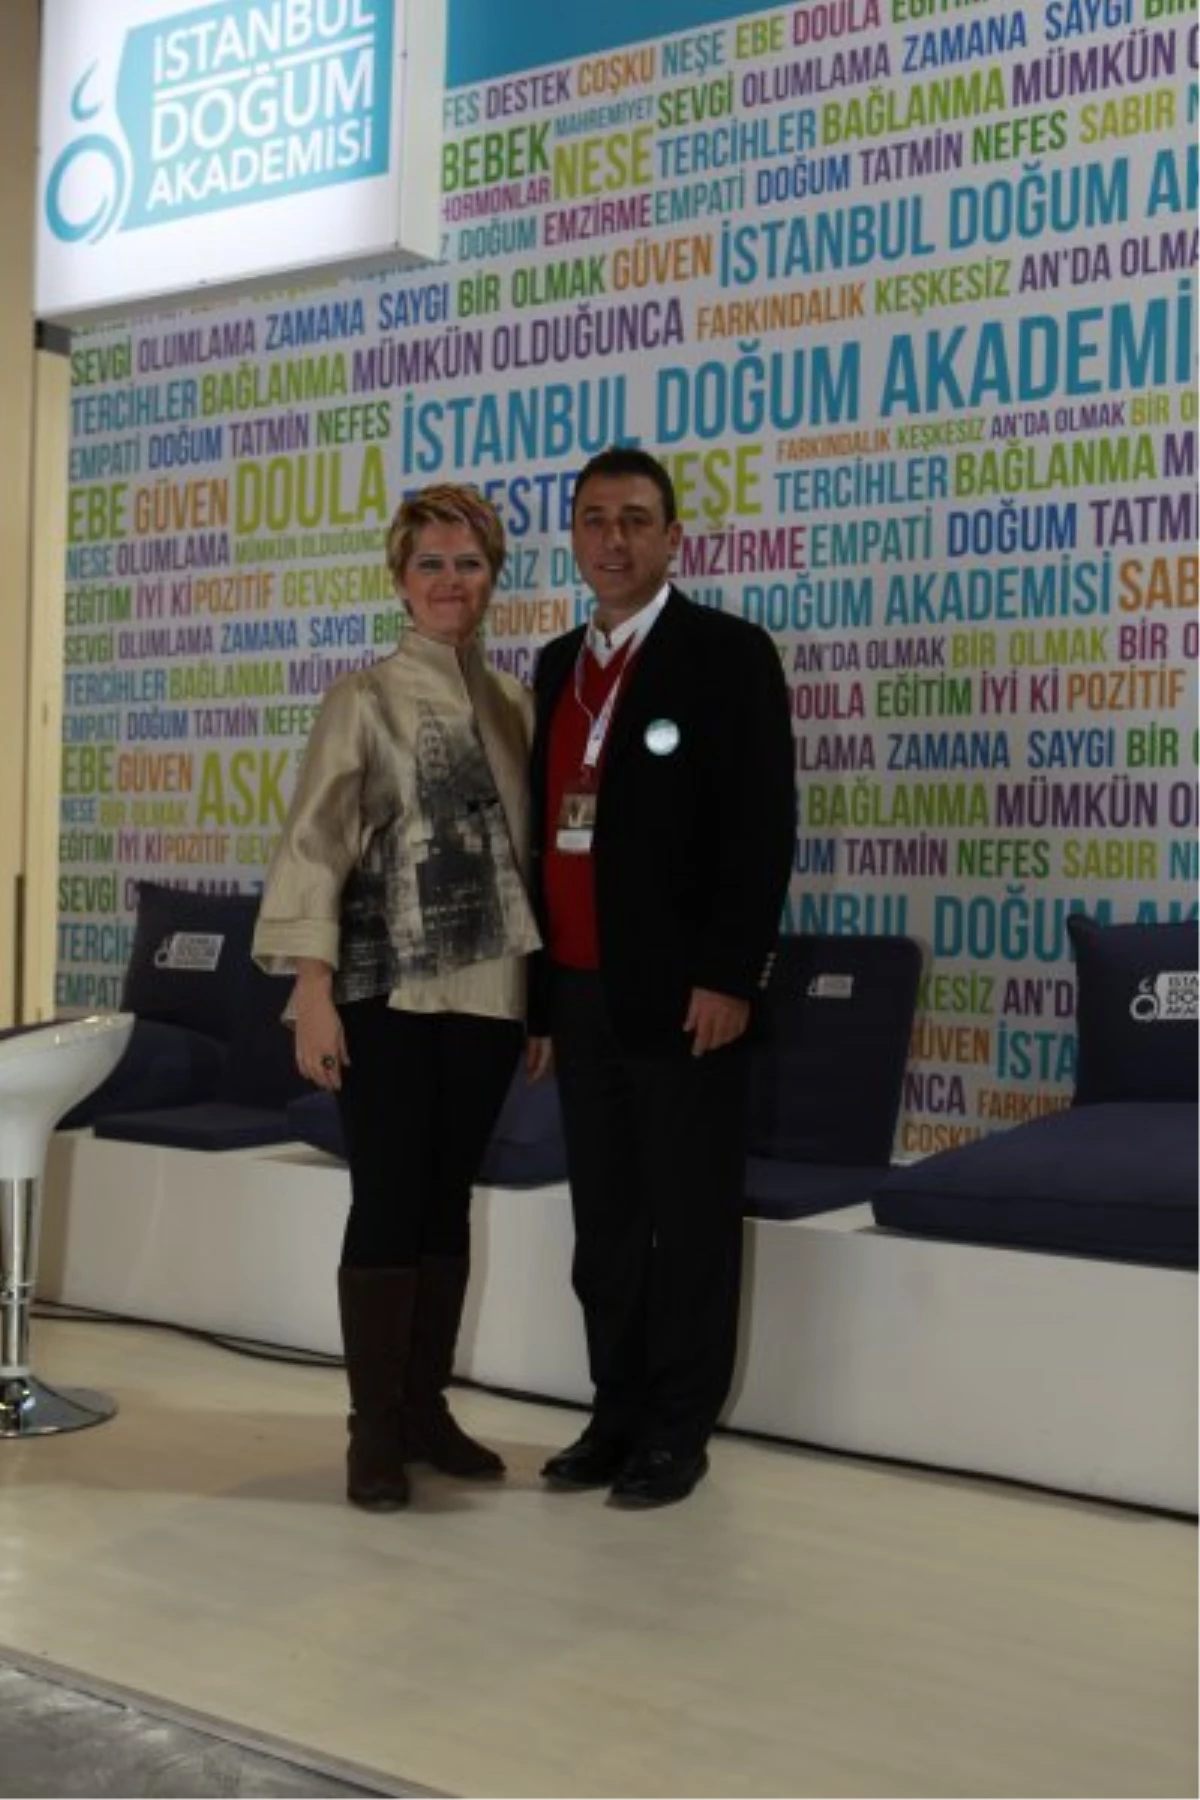 İstanbul Doğum Akademisi Ücretsiz Doğuma Hazırlık Seminerleri veriyor